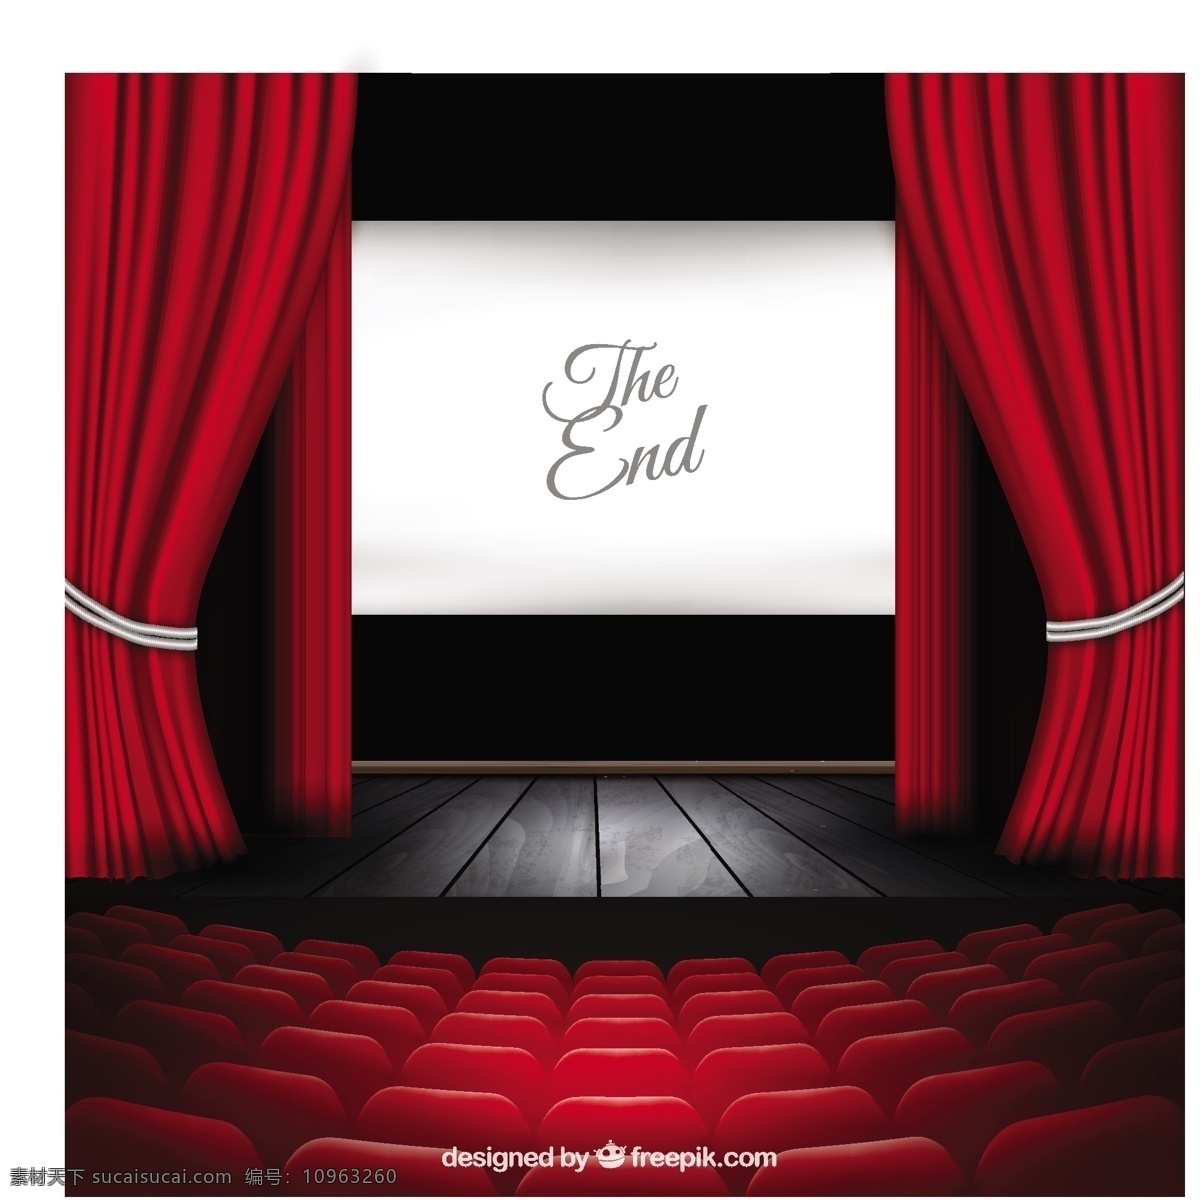 剧场的舞台 电影 舞台 红色的窗帘 戏剧 表演 画面 娱乐 音乐 座椅 排座位 礼堂